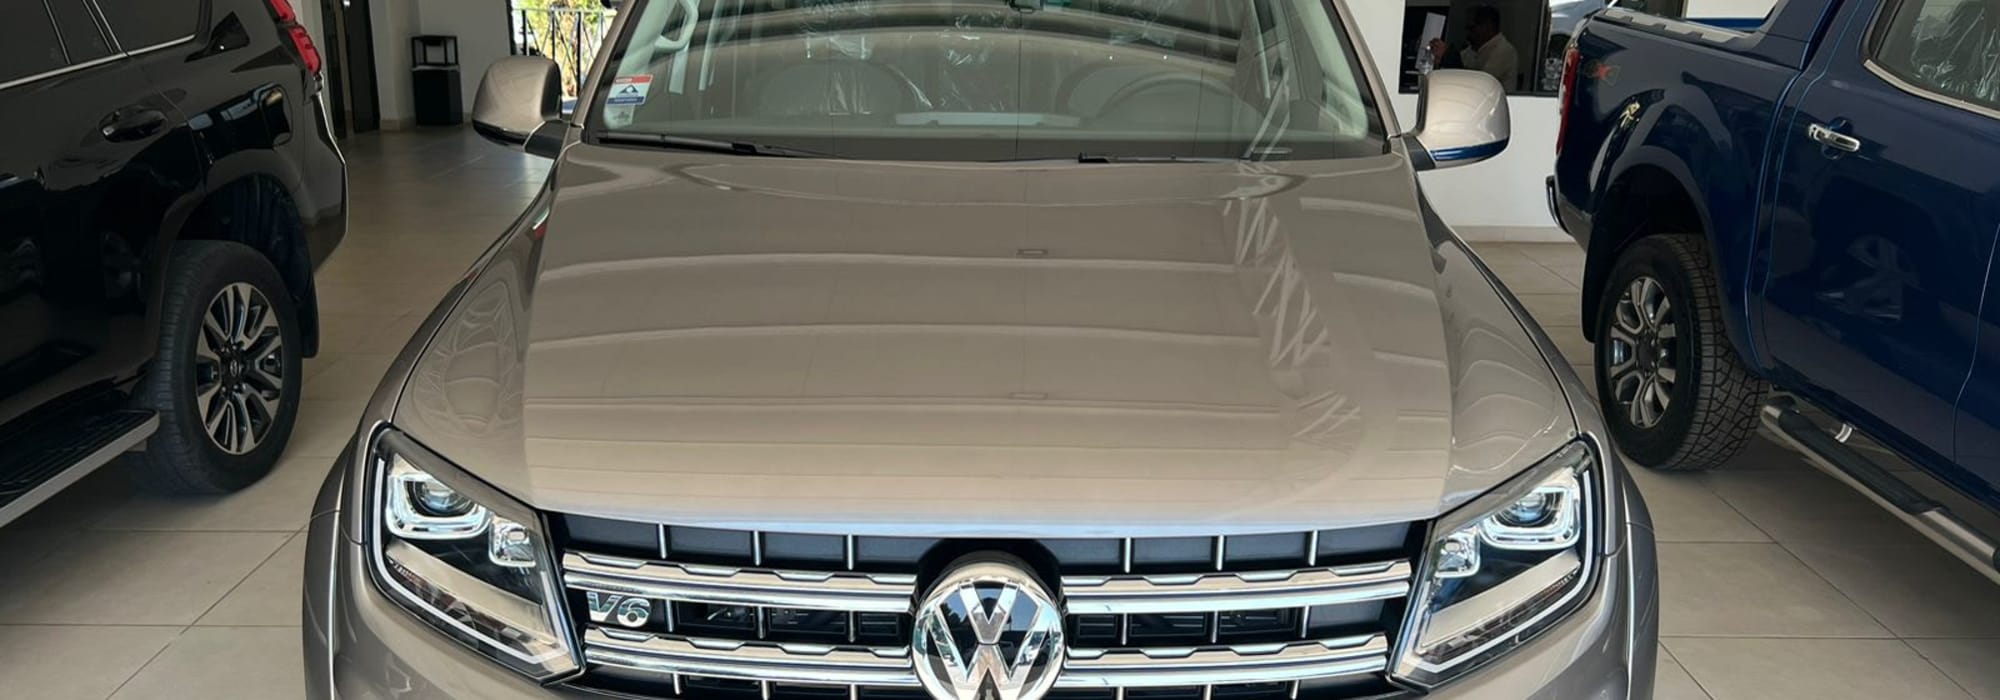 Volkswagen Amarok de 